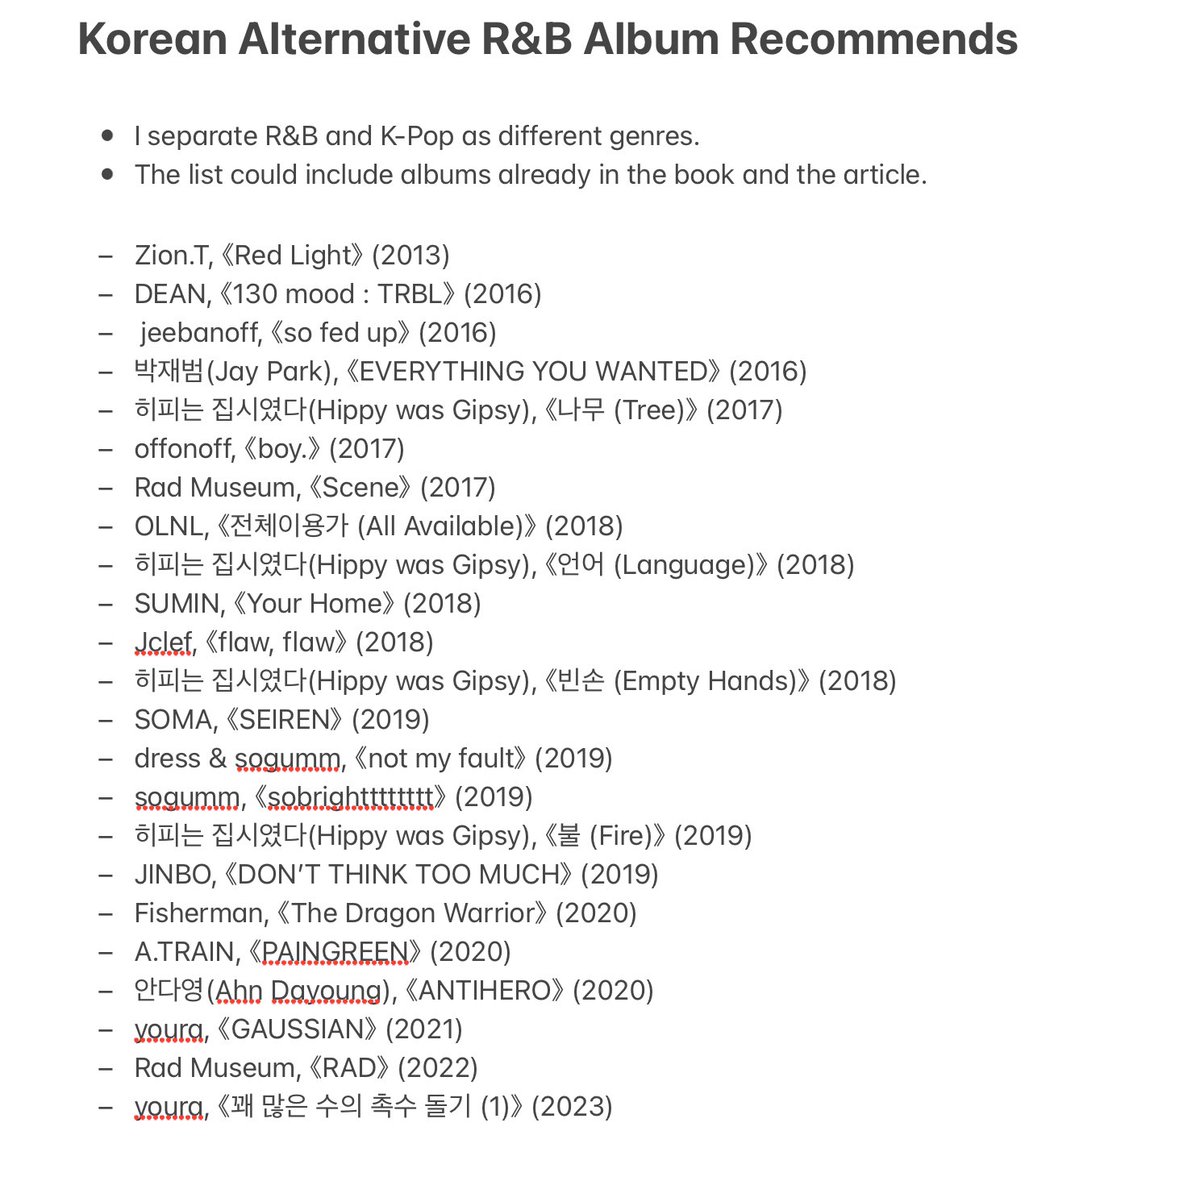 こちらは『オルタナR&Bガイド』に触発された「韓国オルタナR&B」ブログに触発されました追加の韓国オルタナR&Bアルバムおすすめポスト！ * K-Pop作品や、正統R&Bまたはネオソウル色がより中心的な作品は除外しました。 * 本とブログ記事のリストにすでに入っている作品もあります。